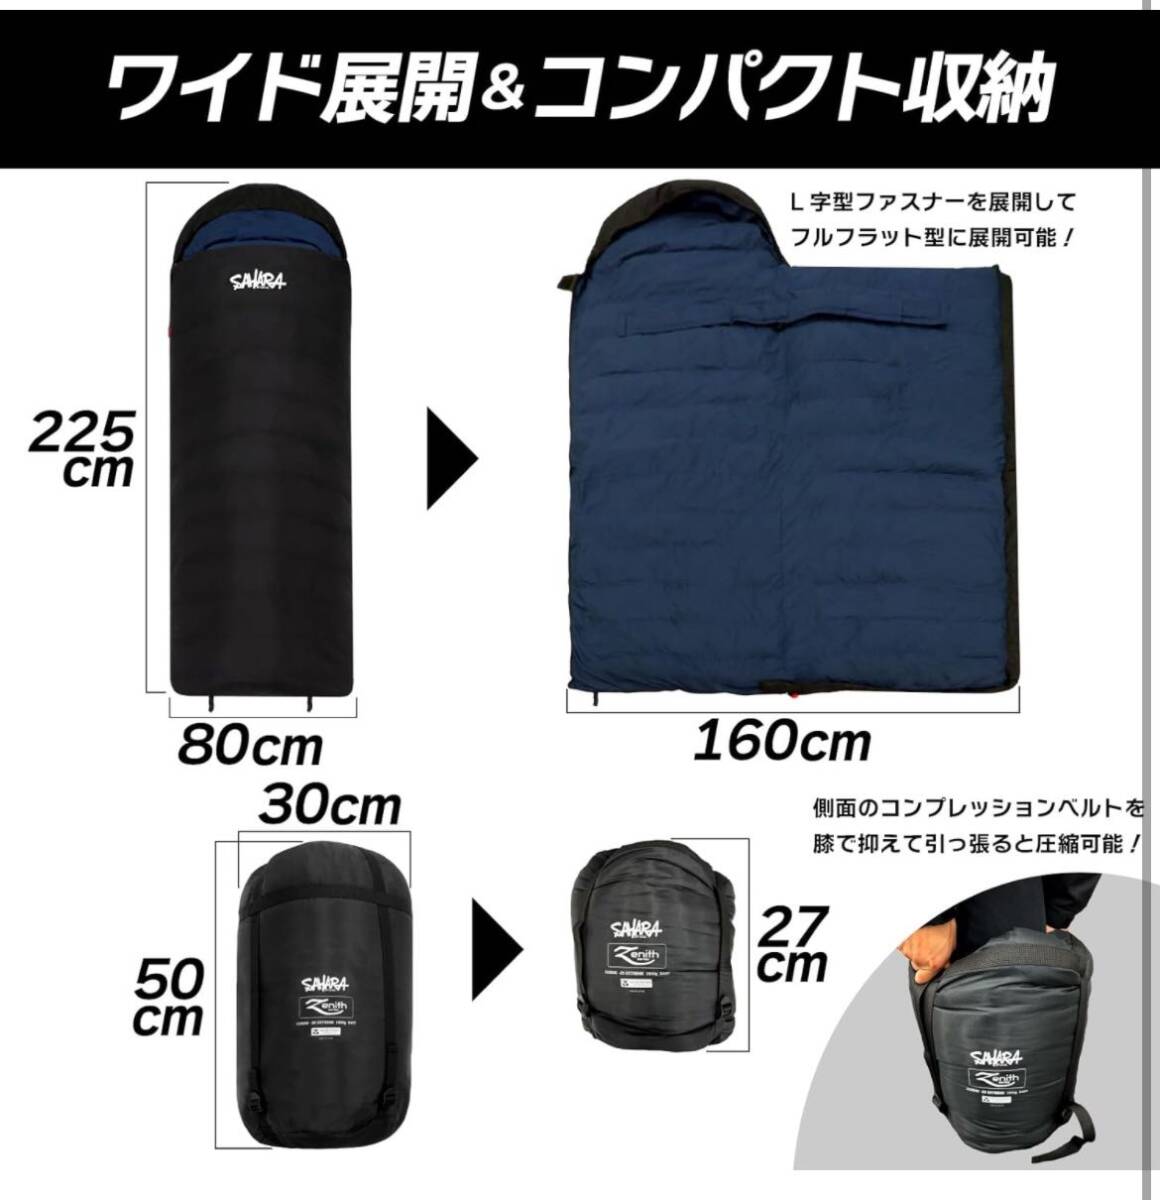  sleeping bag sleeping bag graph .n human work down winter winter strongest envelope type -25*C fieldsahara ZG2500 black 